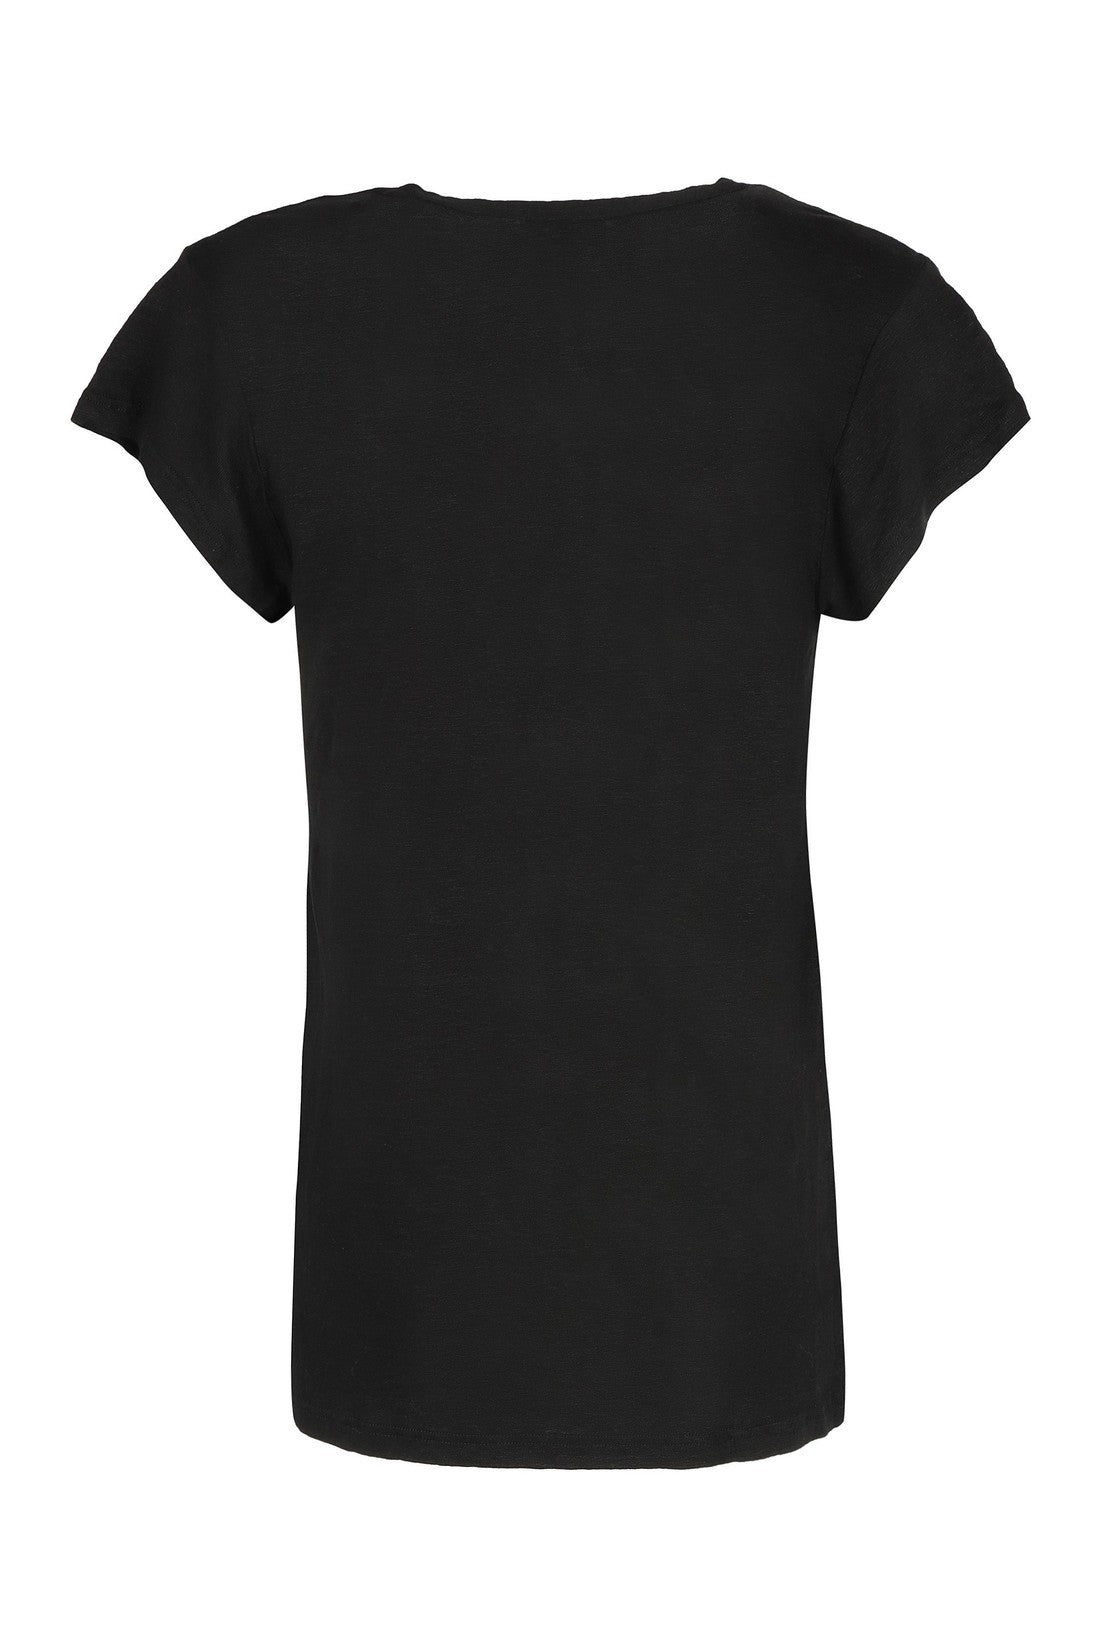 Marant étoile-OUTLET-SALE-Linen t-shirt-ARCHIVIST